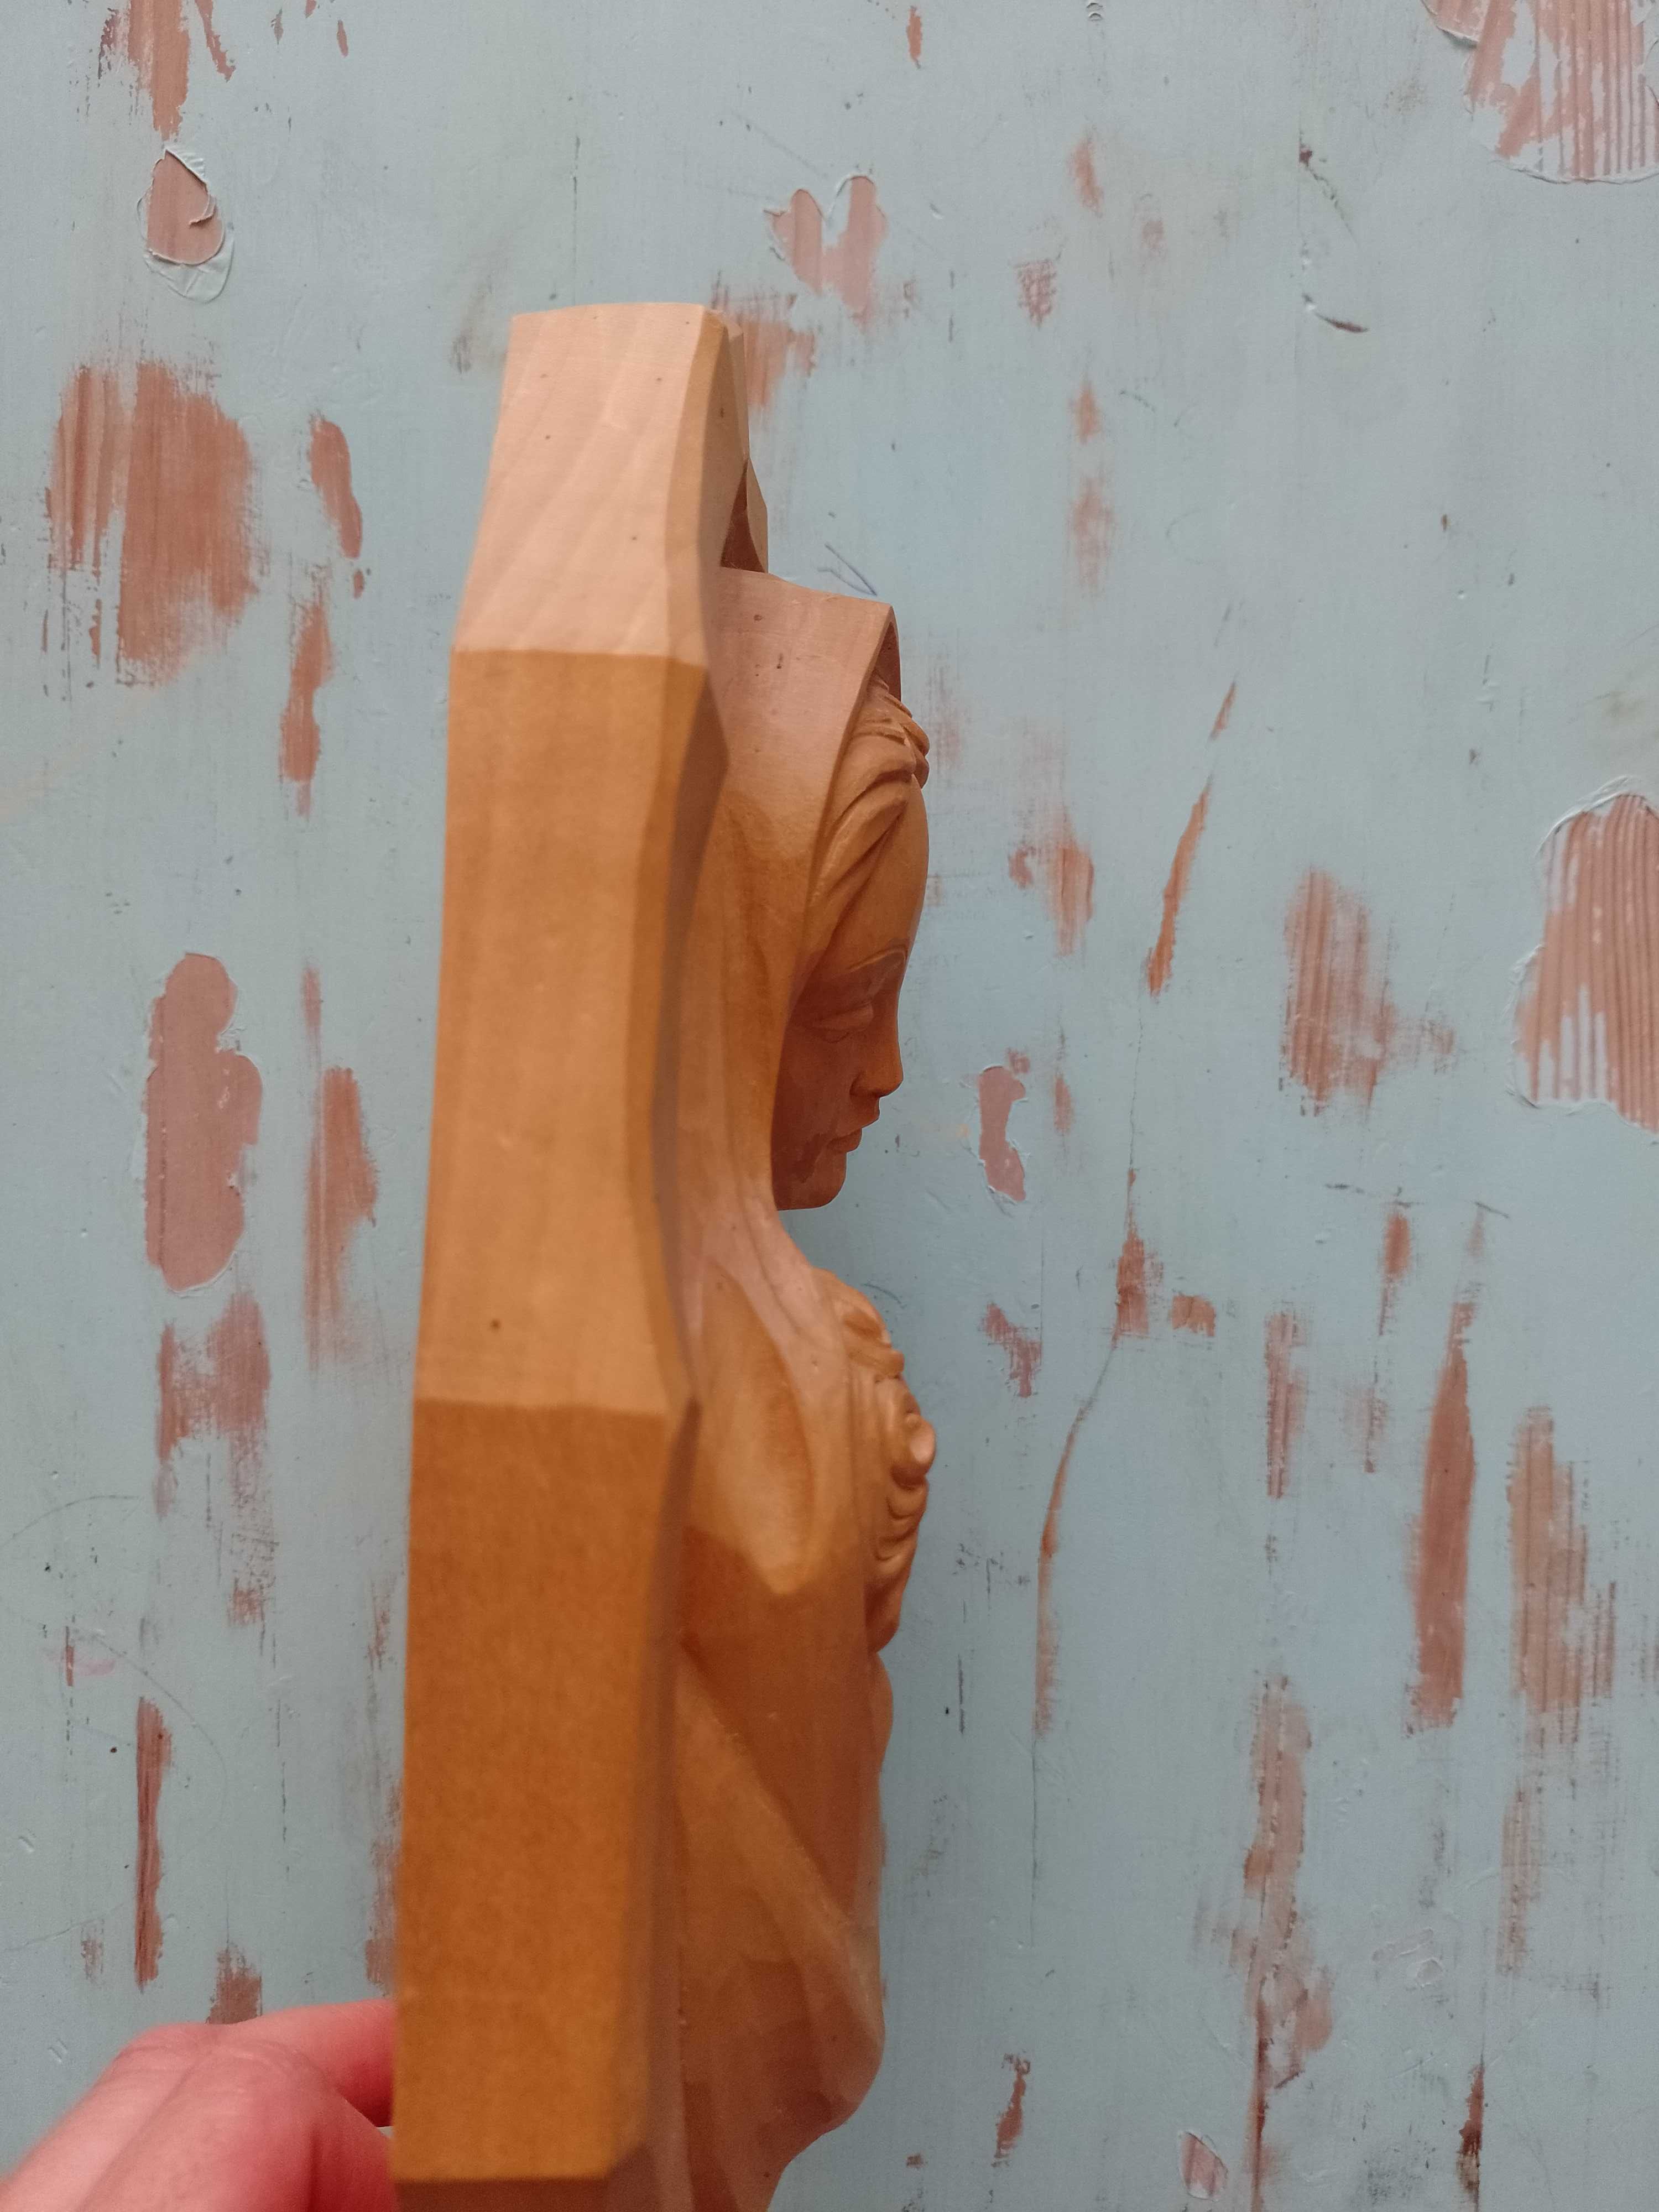 Płaskorzeźba Maryja z dzieciątkiem Jezus drewno